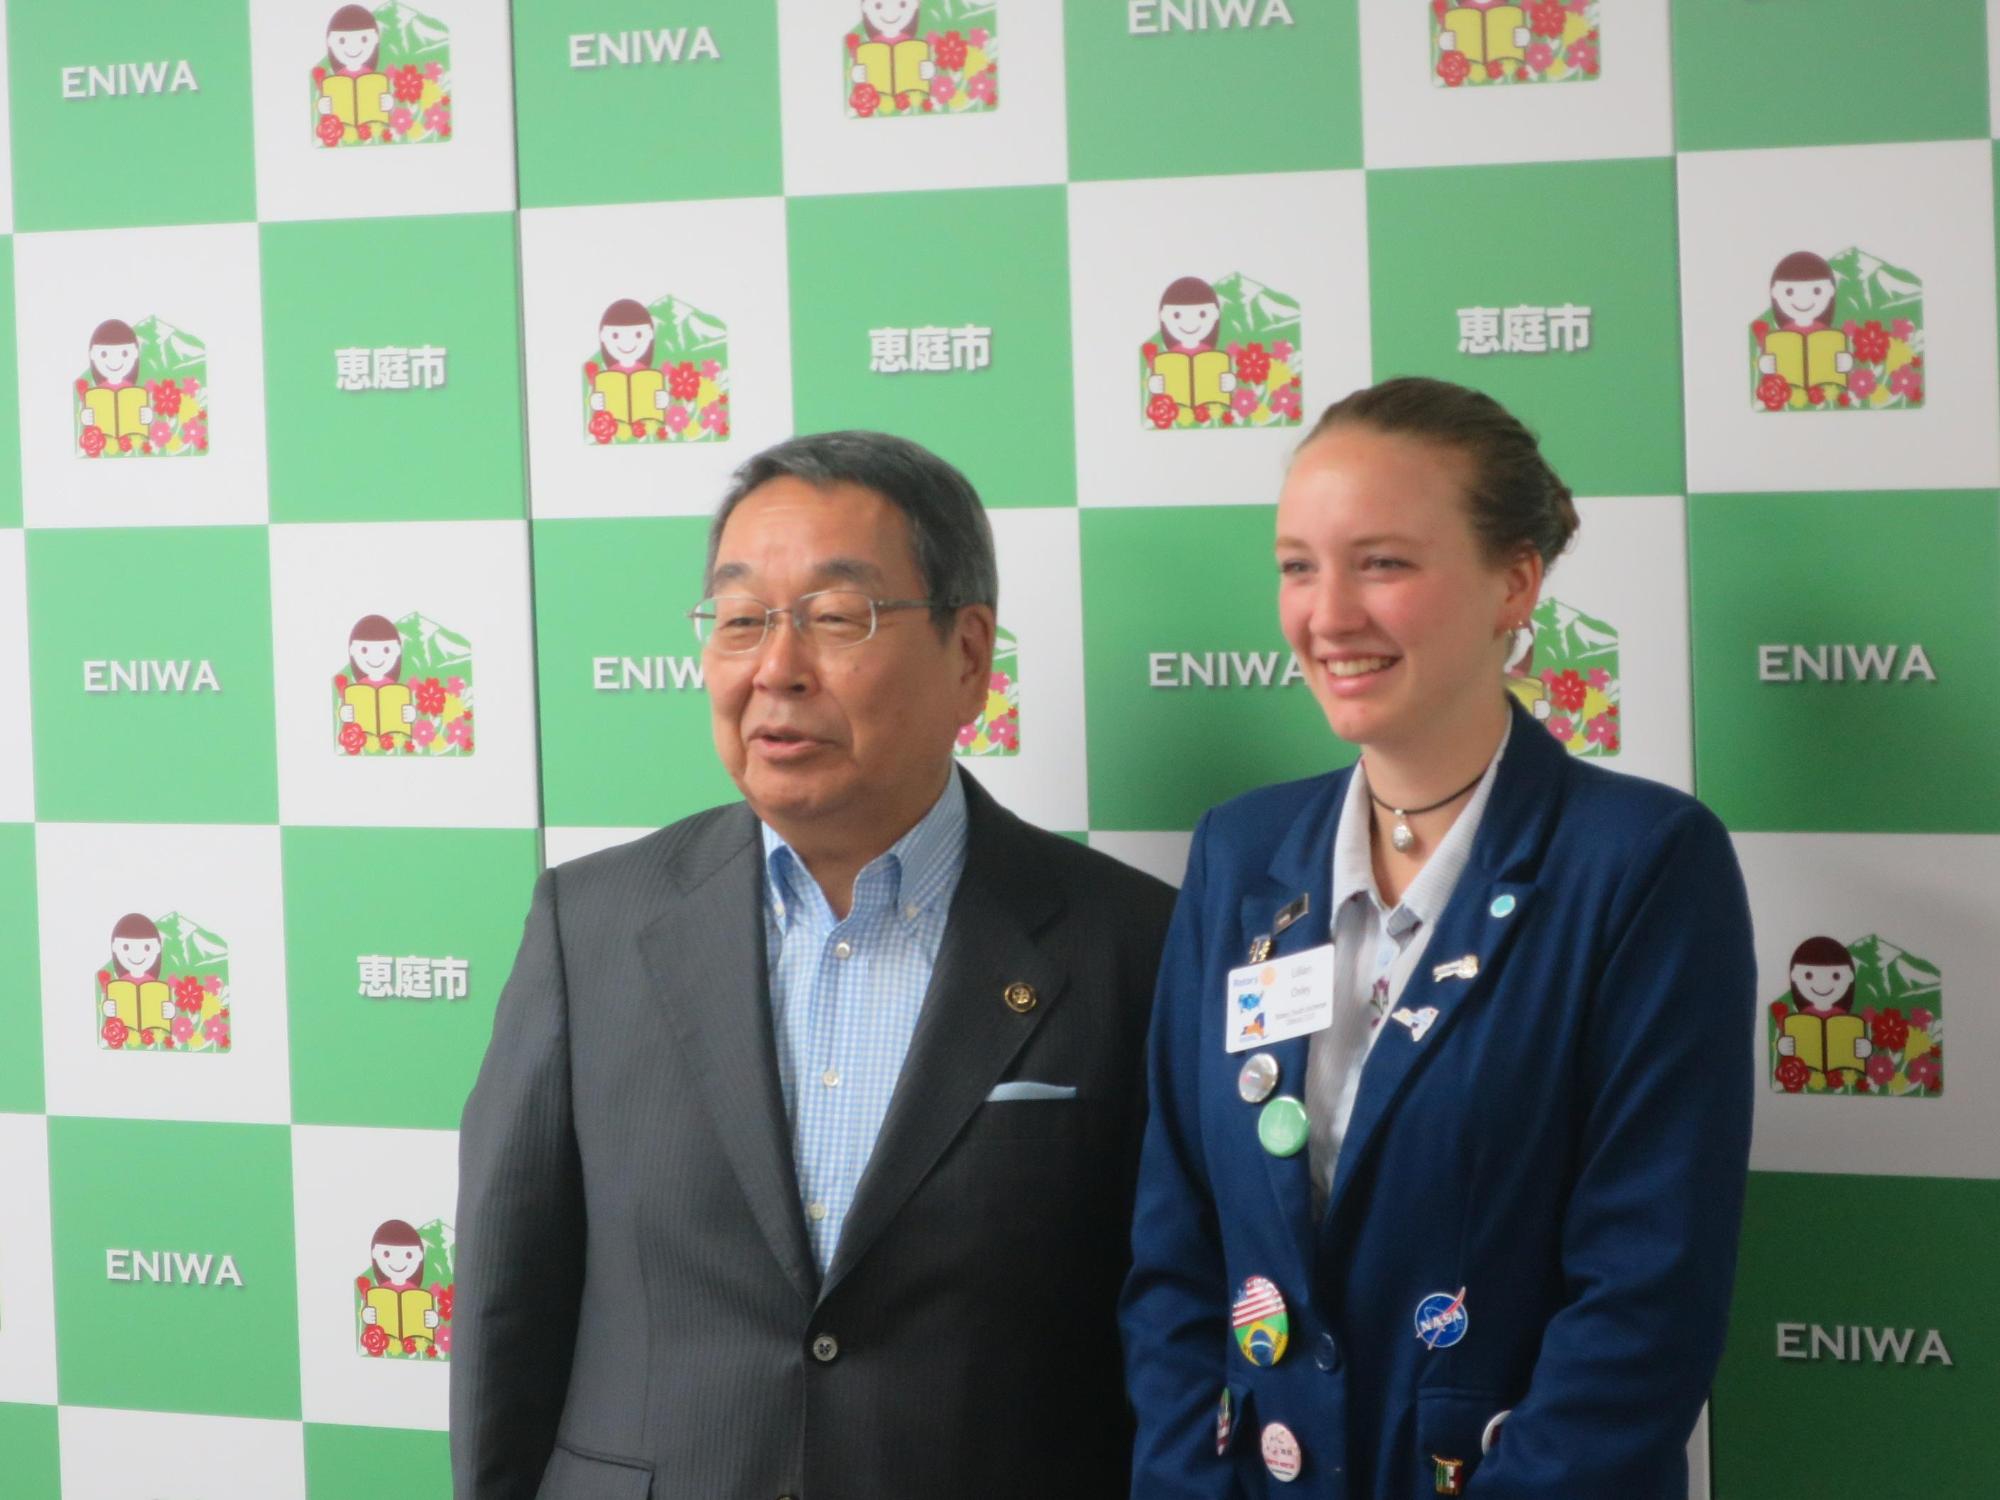 女性留学生と原田市長が記念撮影している写真